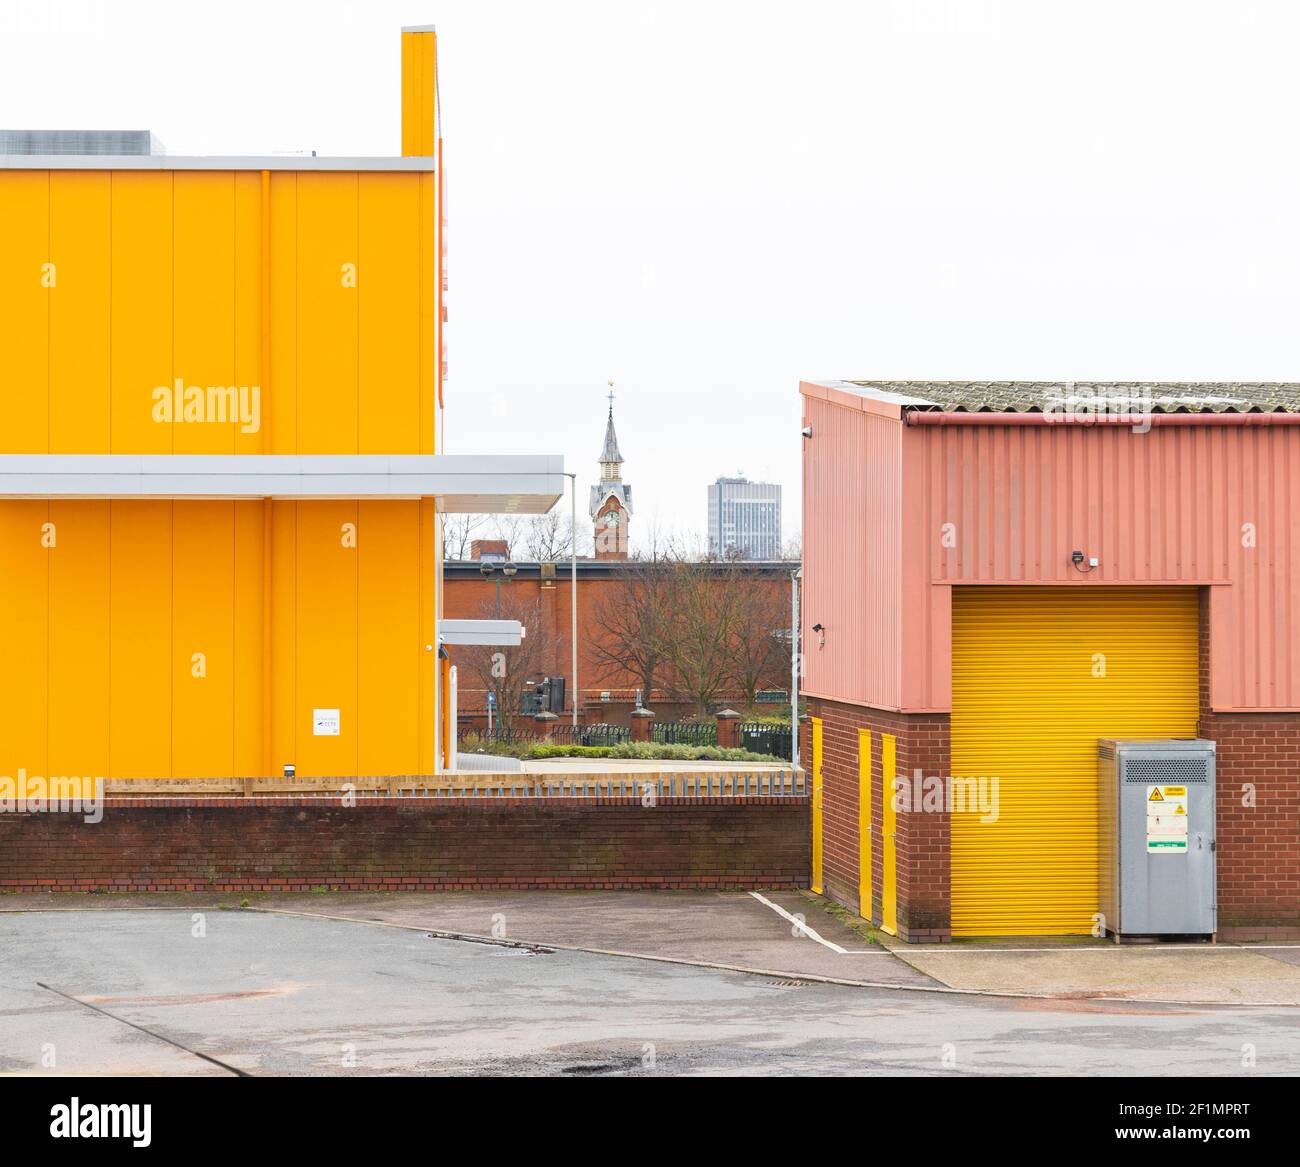 Unités d'entrepôt en carton ondulé jaune vif, rose, mur en brique. Sur le vieux marché du bétail (domaine industriel commun de Freemen) montre l'horloge de la maison de comptage. Banque D'Images